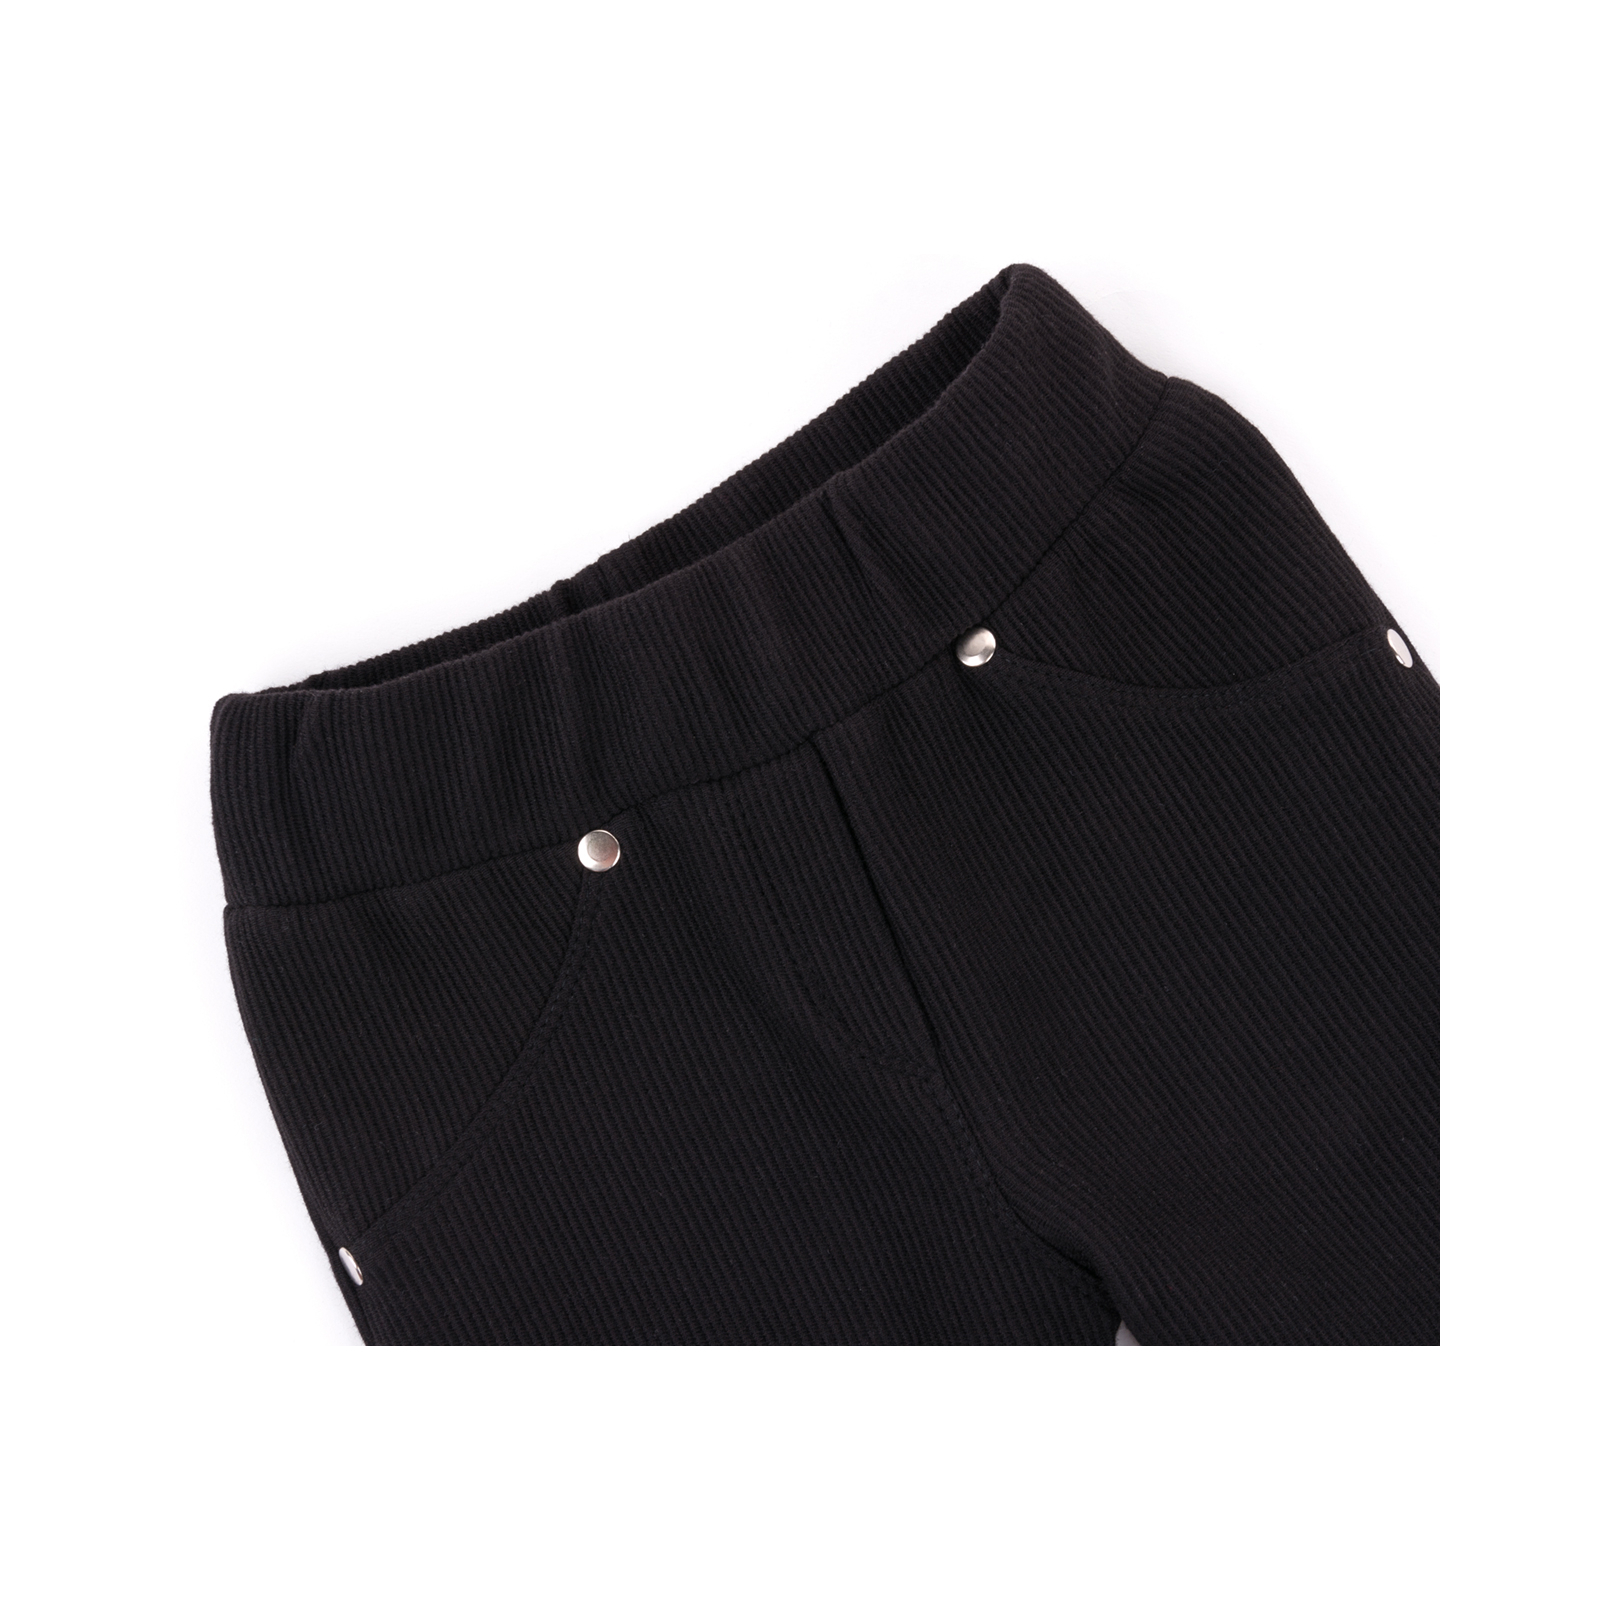 Лосины Breeze в рубчик с карманчиком (9842-116G-black) изображение 3